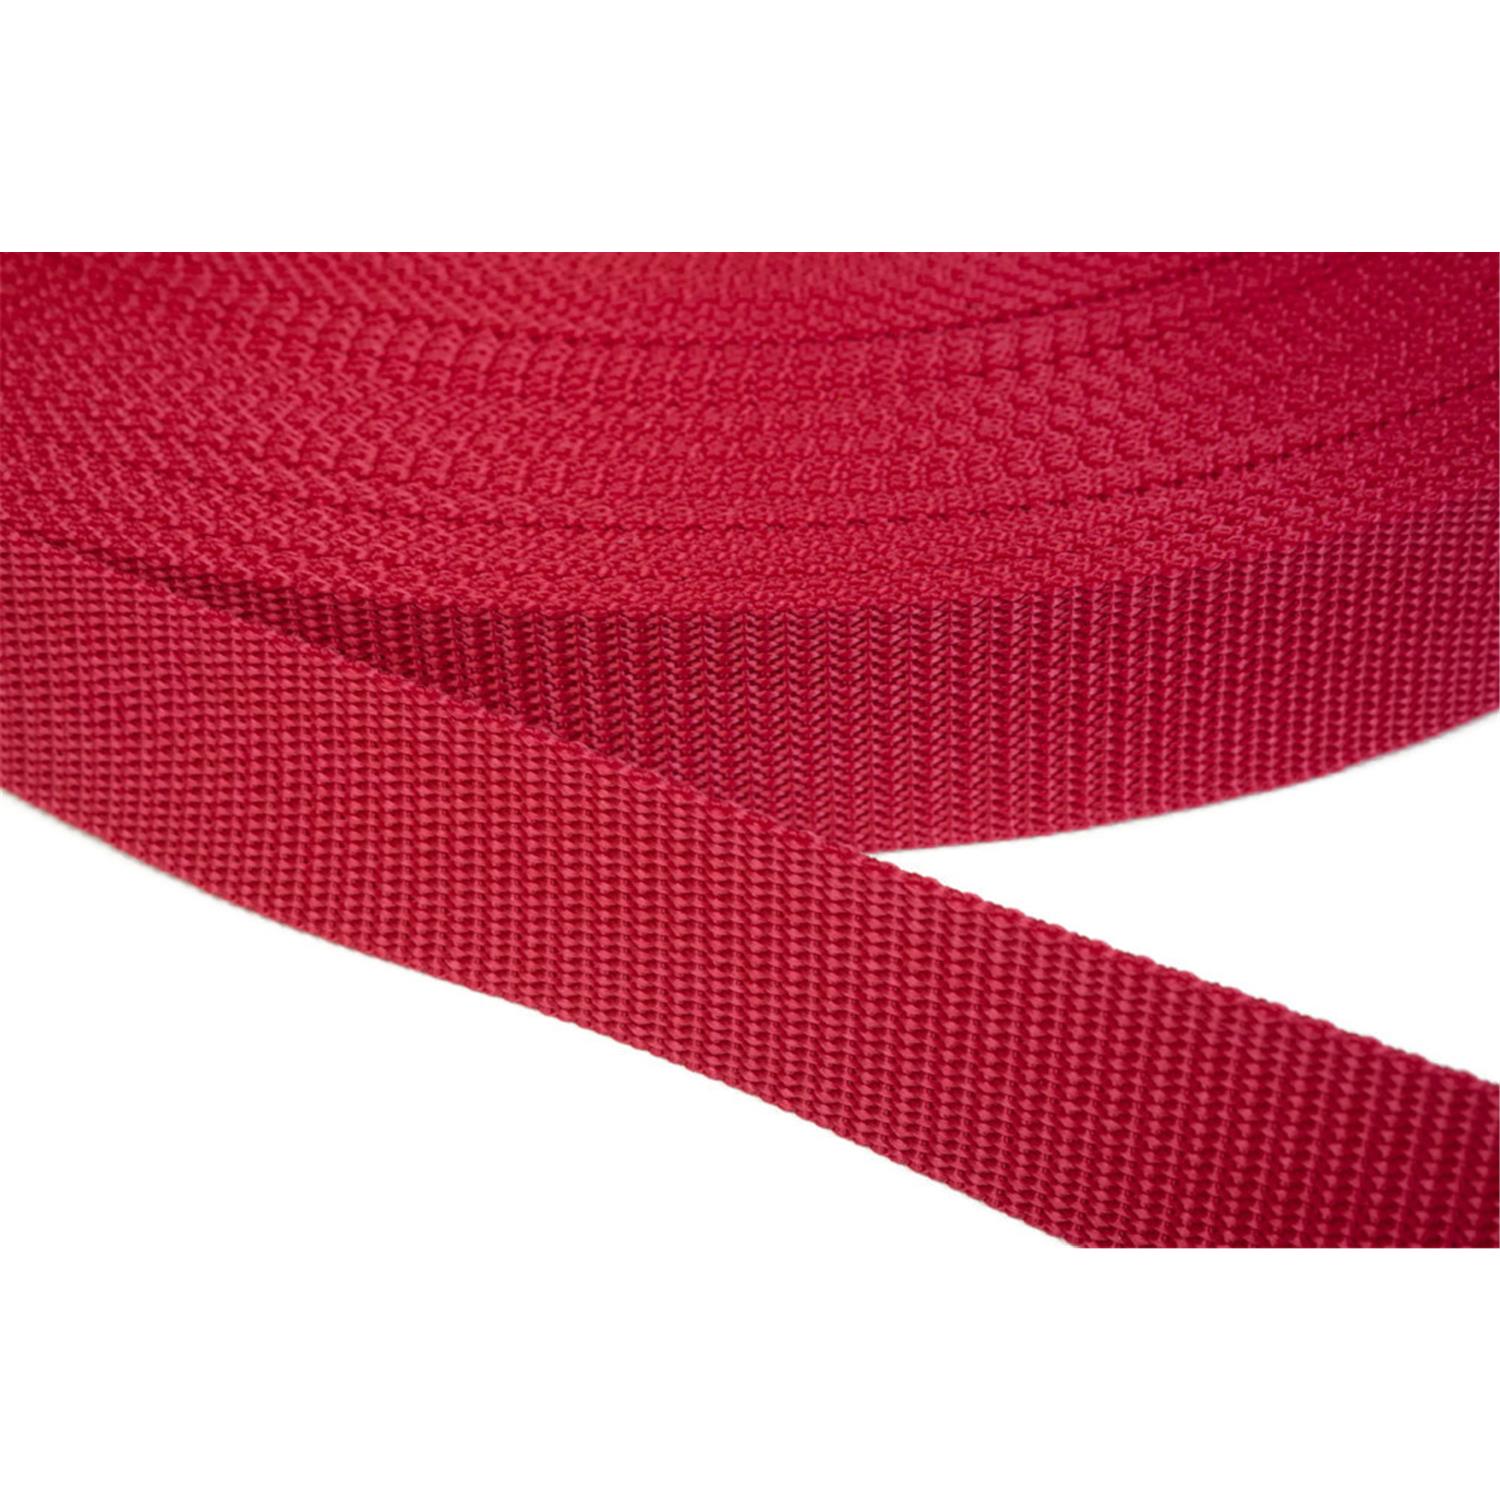 Gurtband 50mm breit aus Polypropylen in 41 Farben 19 - rot 6 Meter